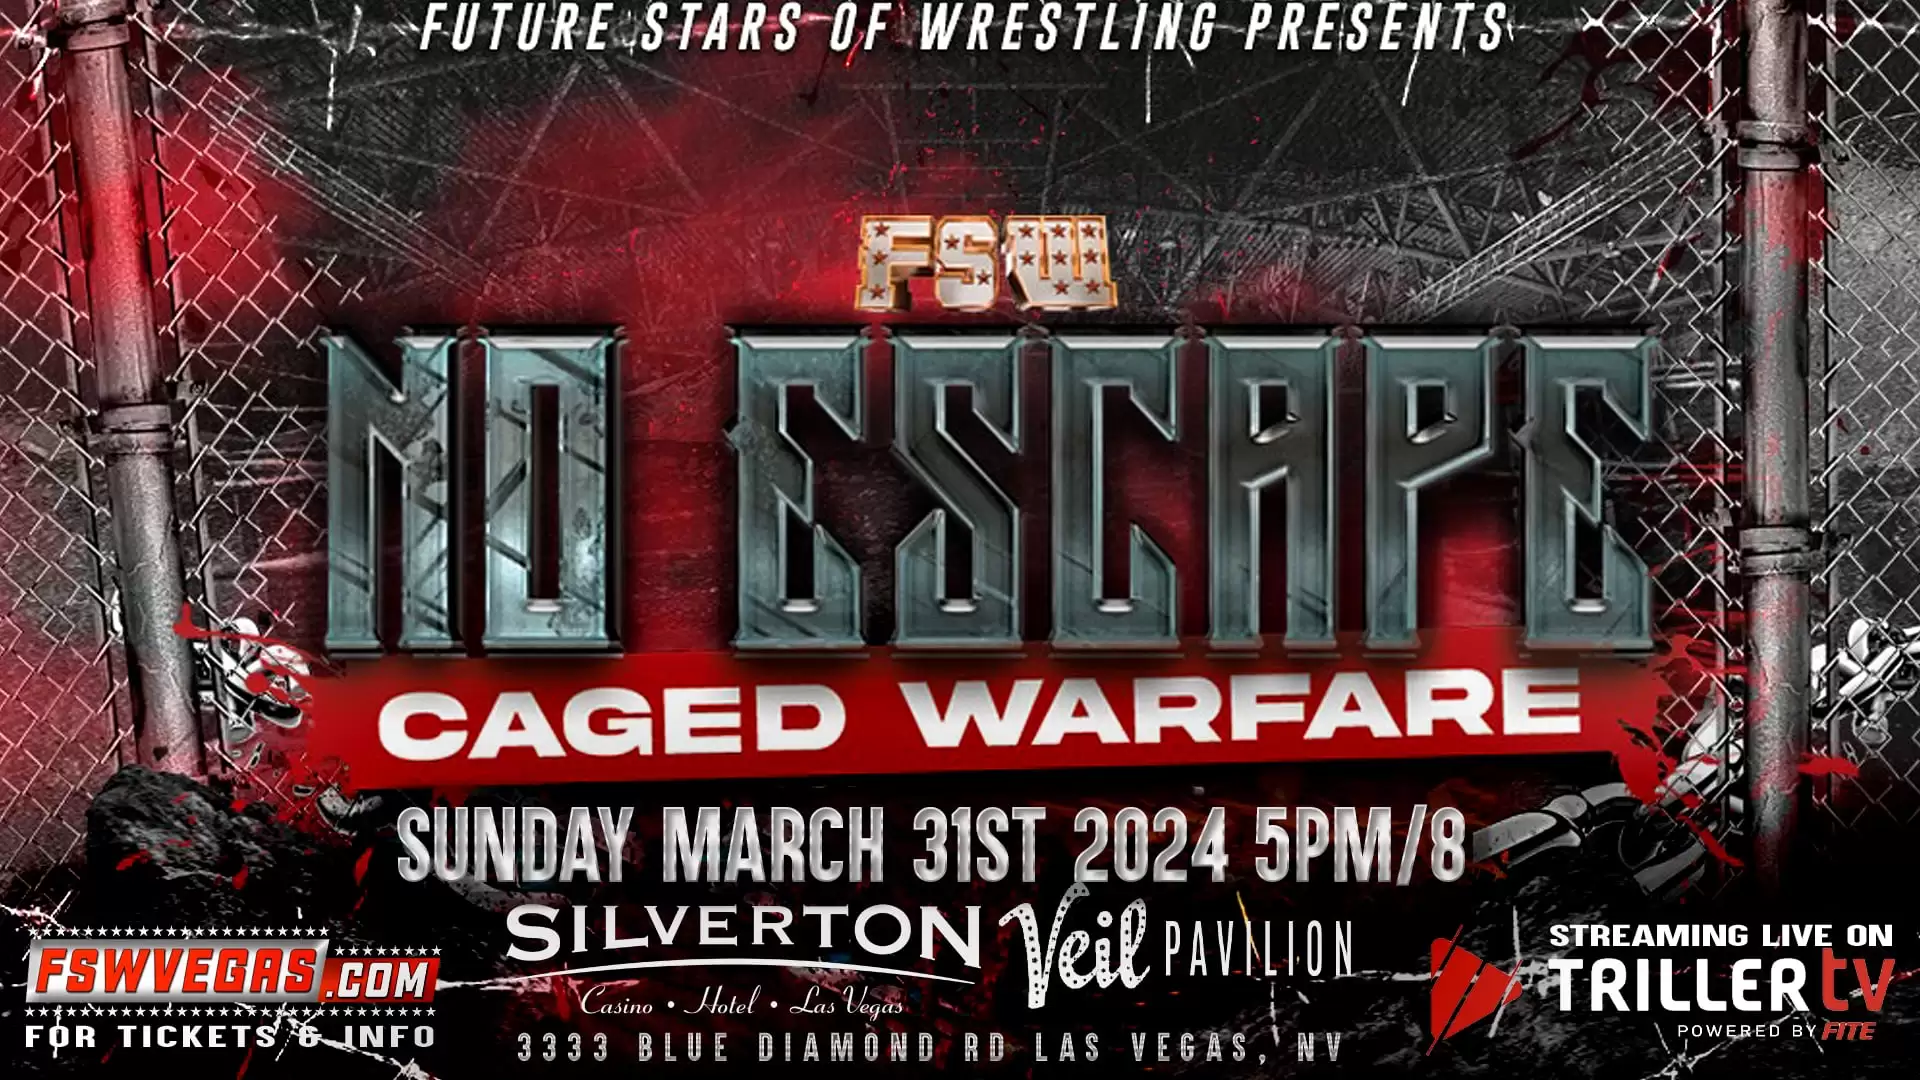 FSW Future stars of Wrestling No Escape 2024